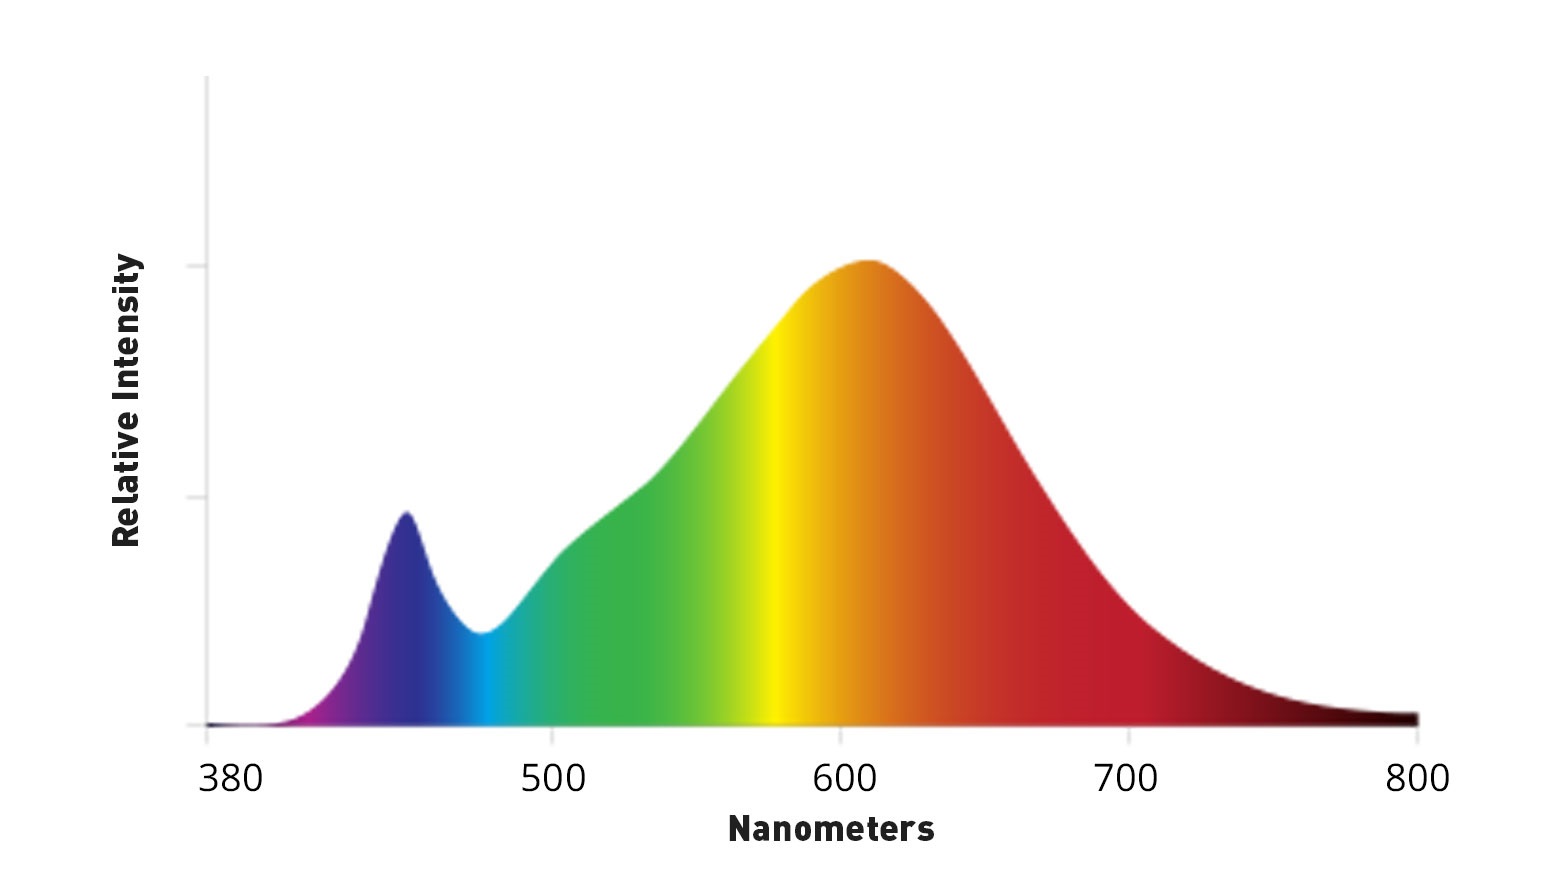 emission spectra of 2800k light